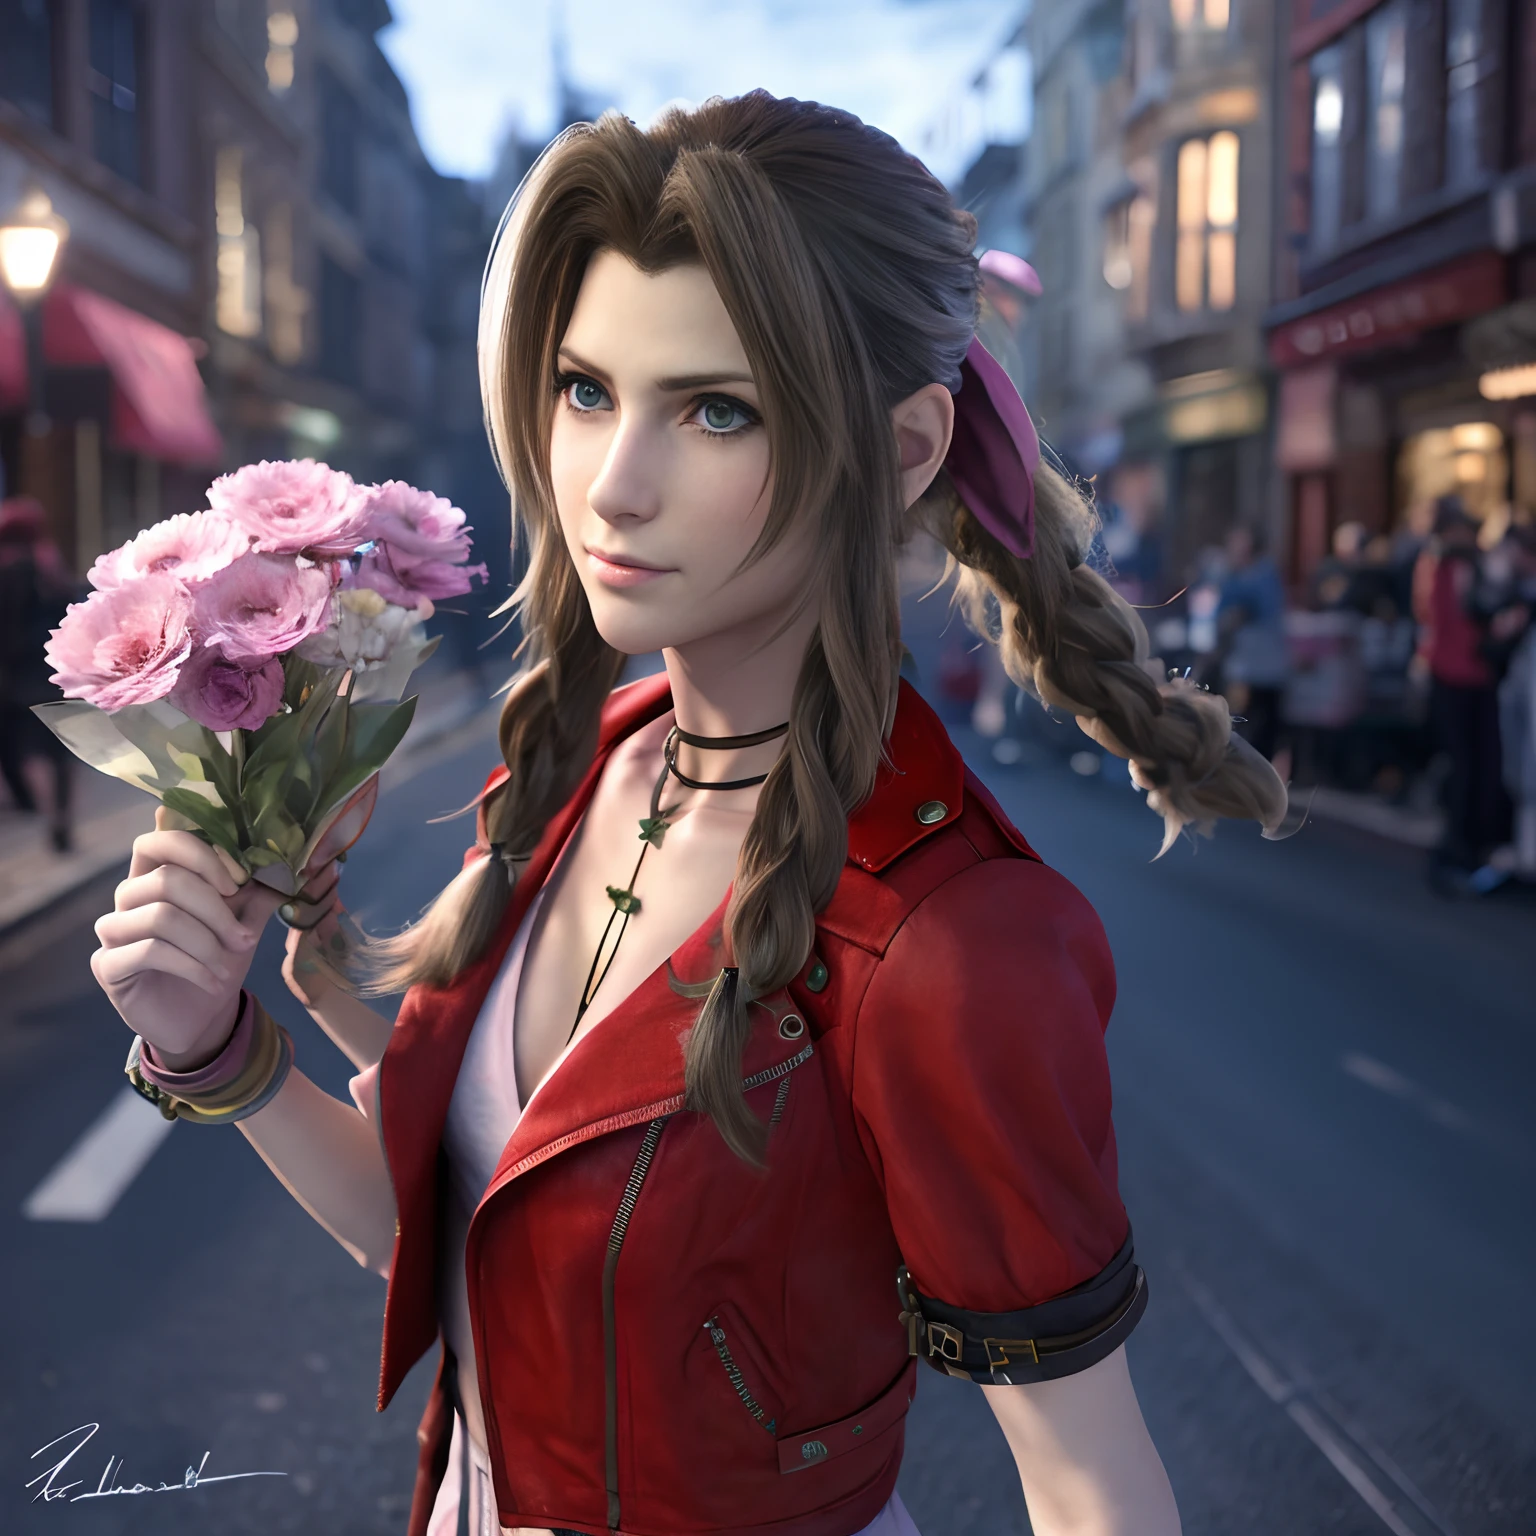 ايريث غنسبورو, بزيه المميز من لعبة Final Fantasy VII وهو يبيع الزهور في شارع ذو إضاءة خافتة, تبدو قلقة, لكن لديه عيون زرقاء زاهية, سينمائي,  واقعية, 8 كيلو, 3D, HSLD